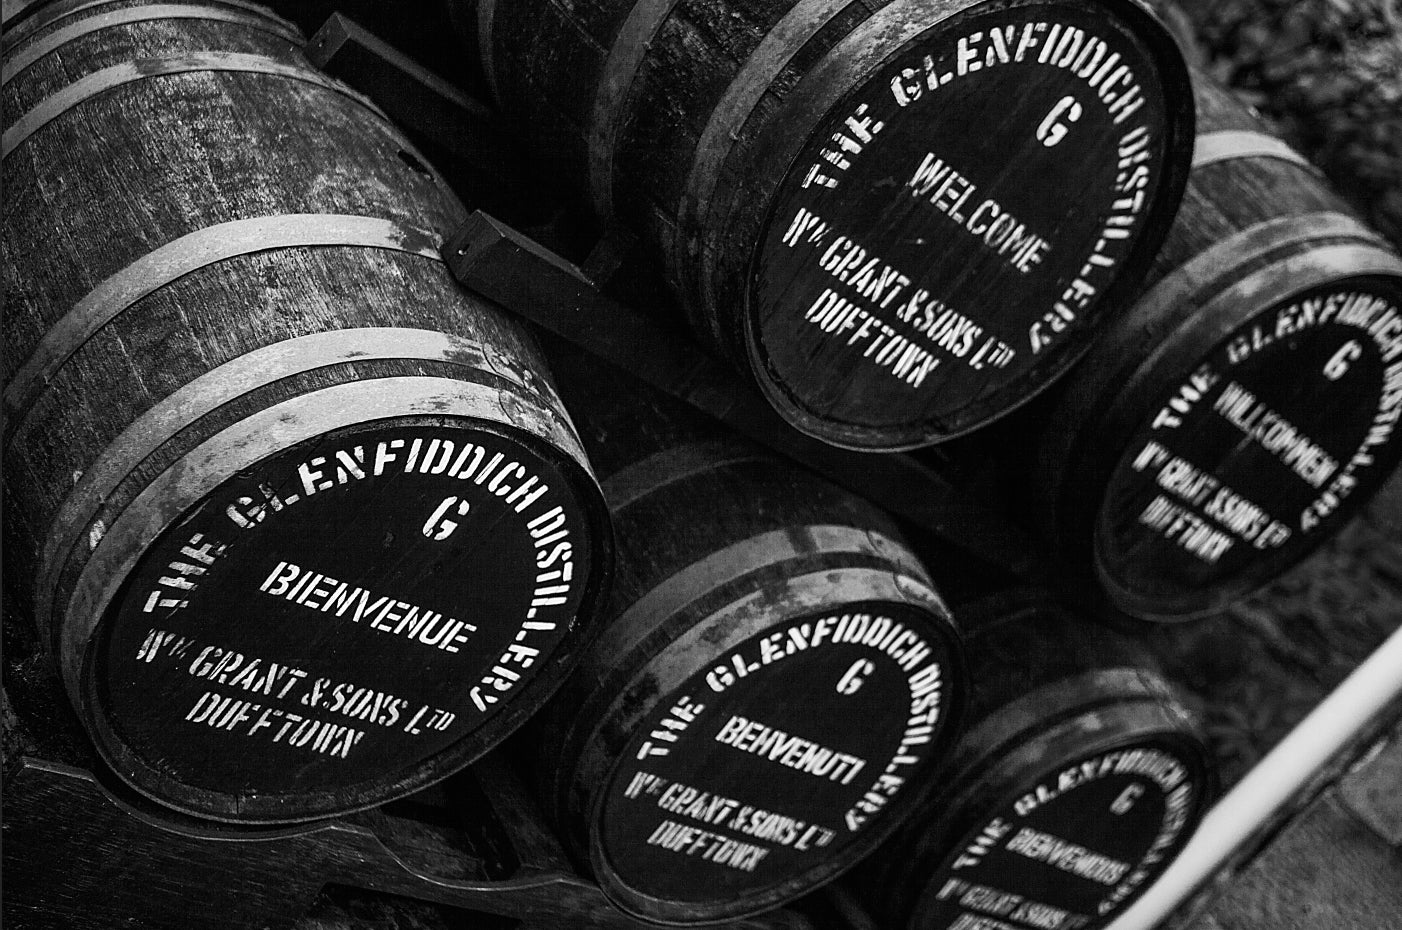 The Rich History of Scotch: Single Malt Whisky of Scotland